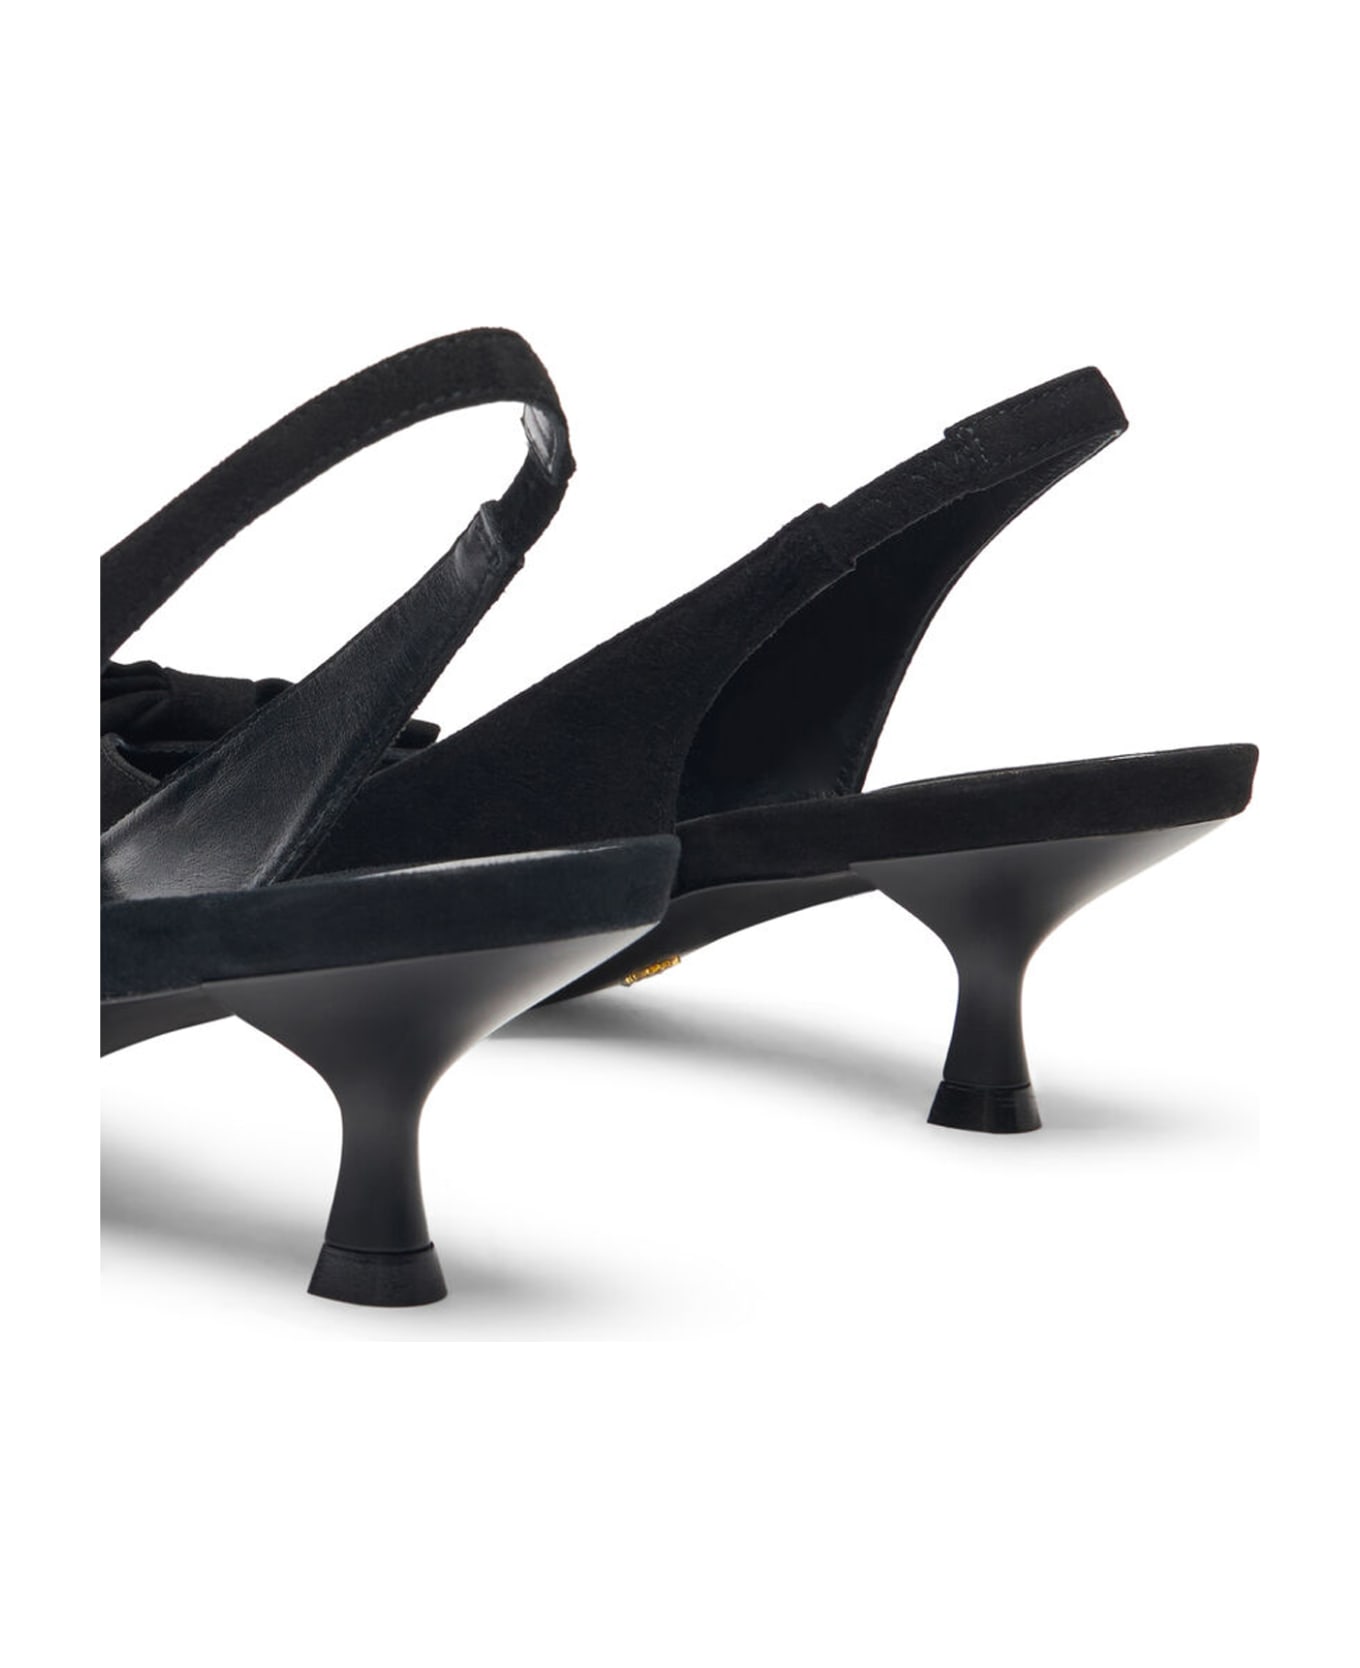 Stuart Weitzman Shoes With Heels - Black ハイヒール